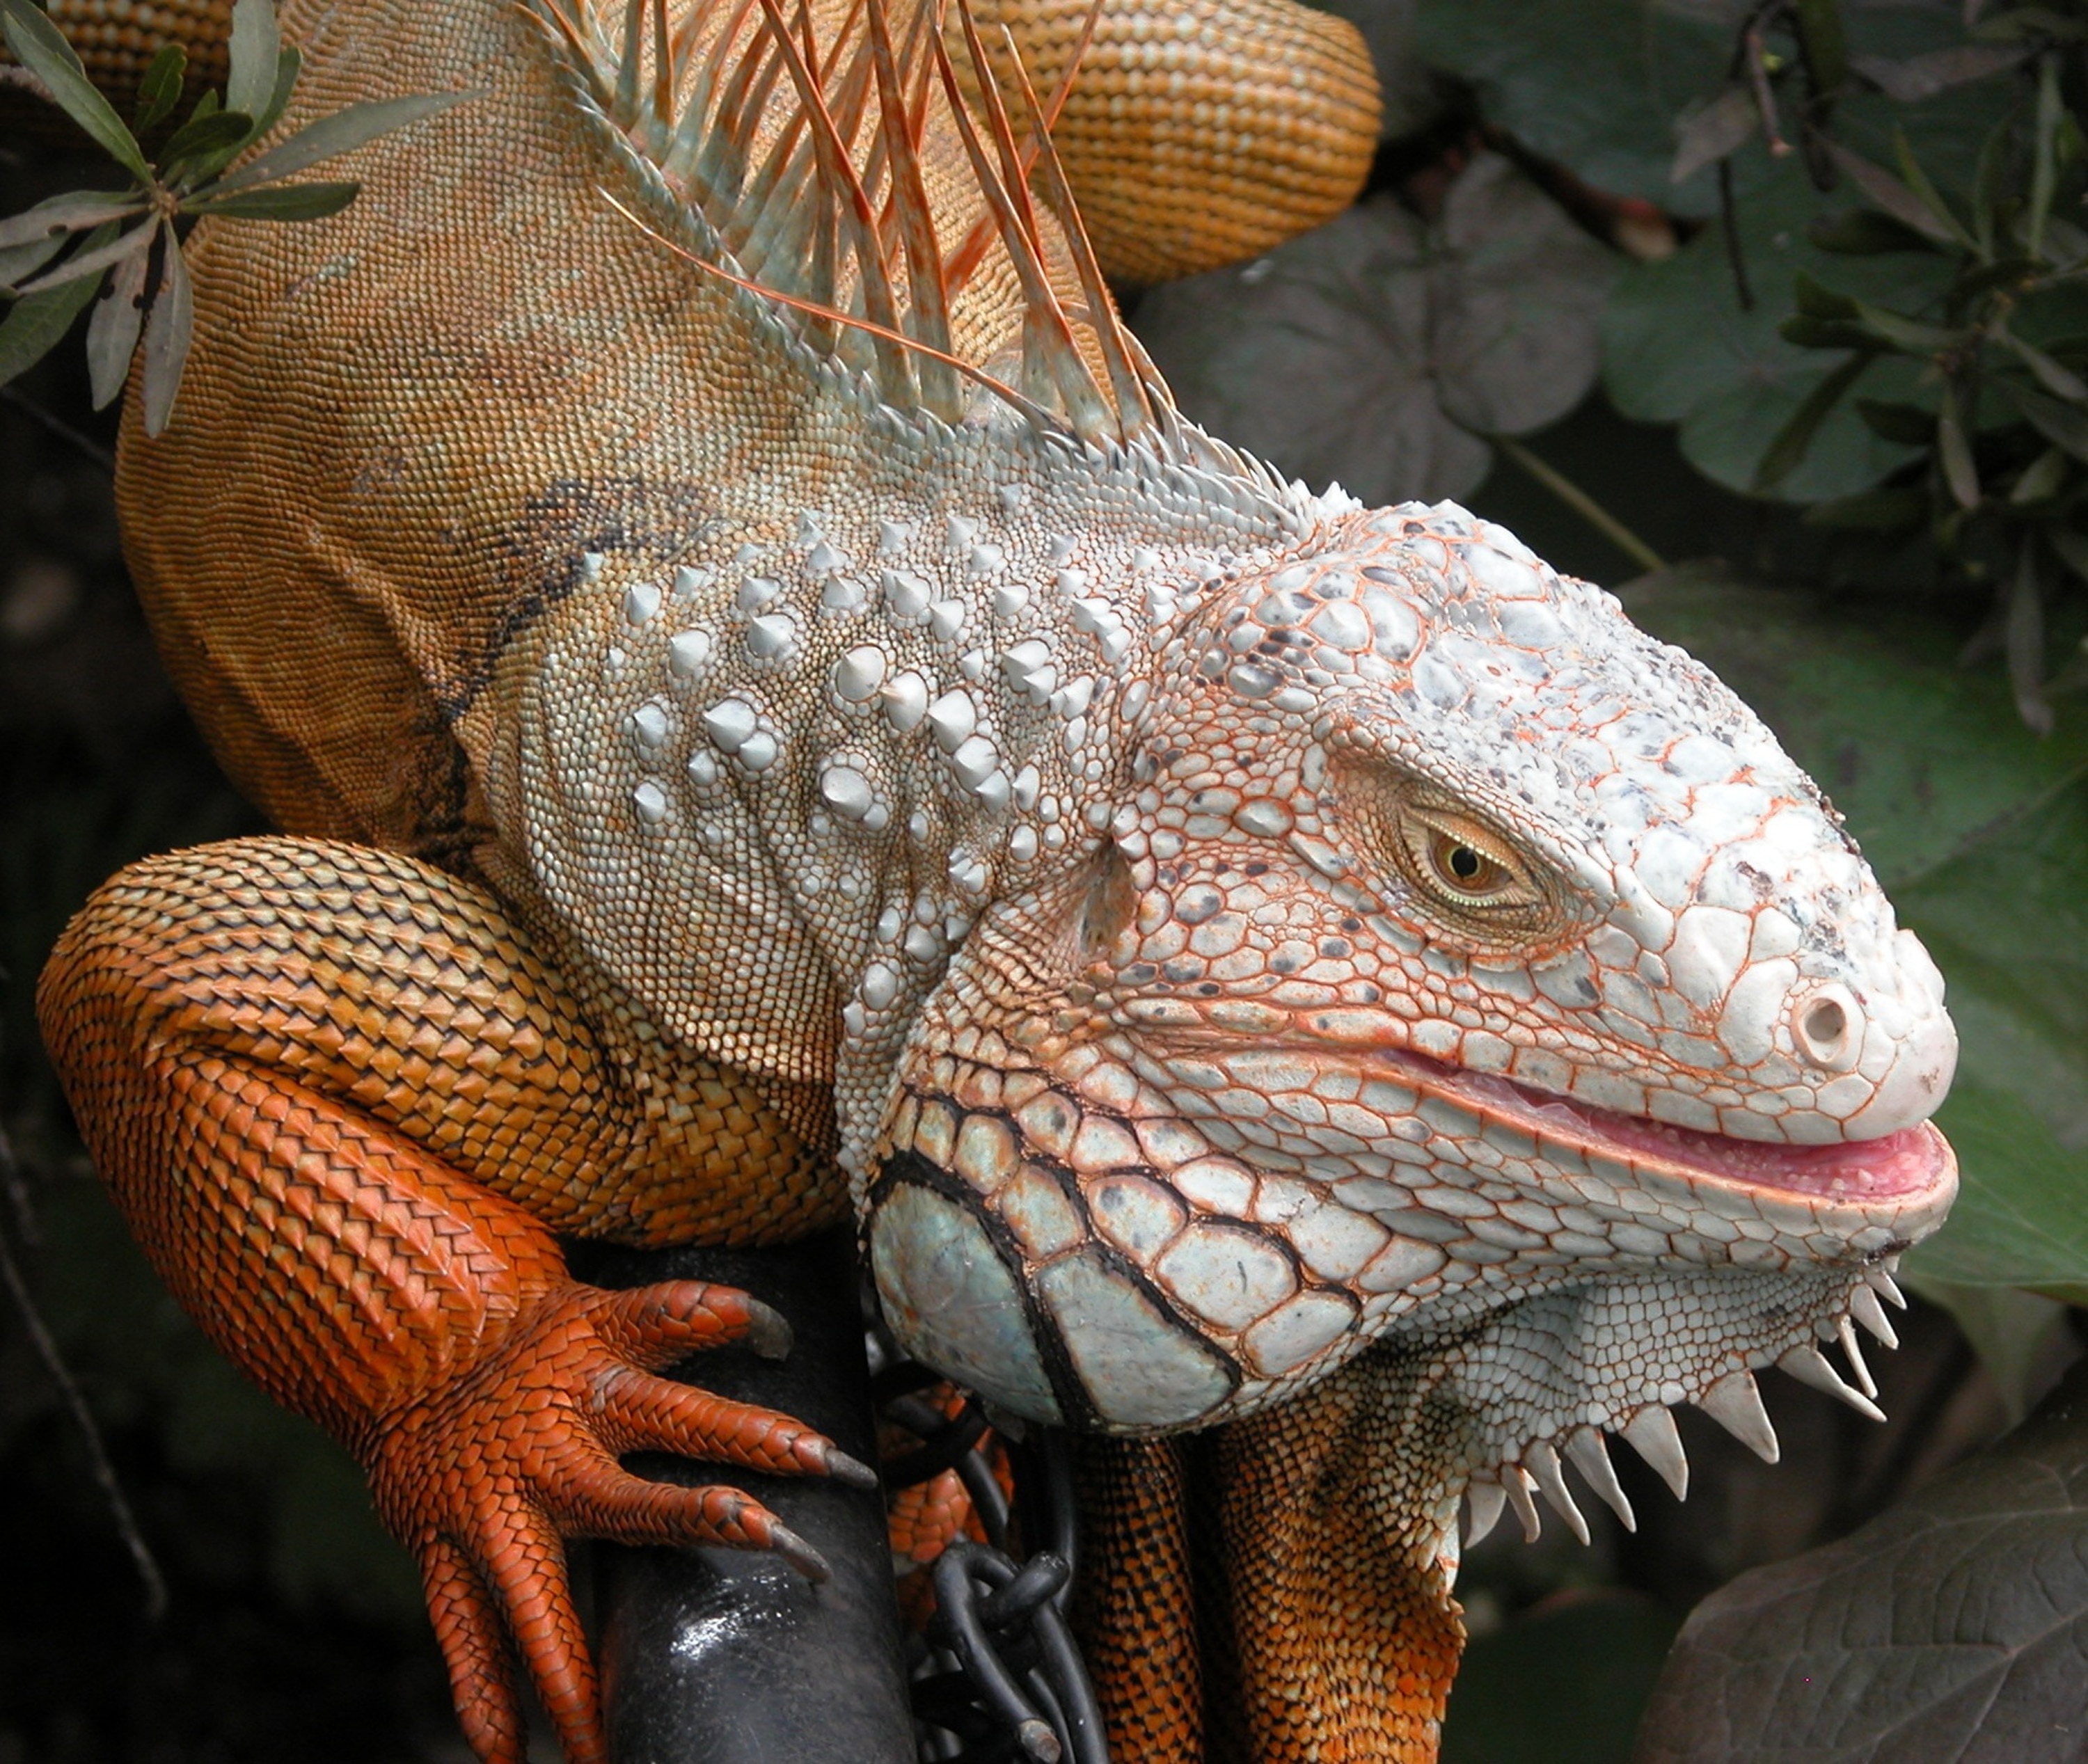 orange, white and gray komodo dragon